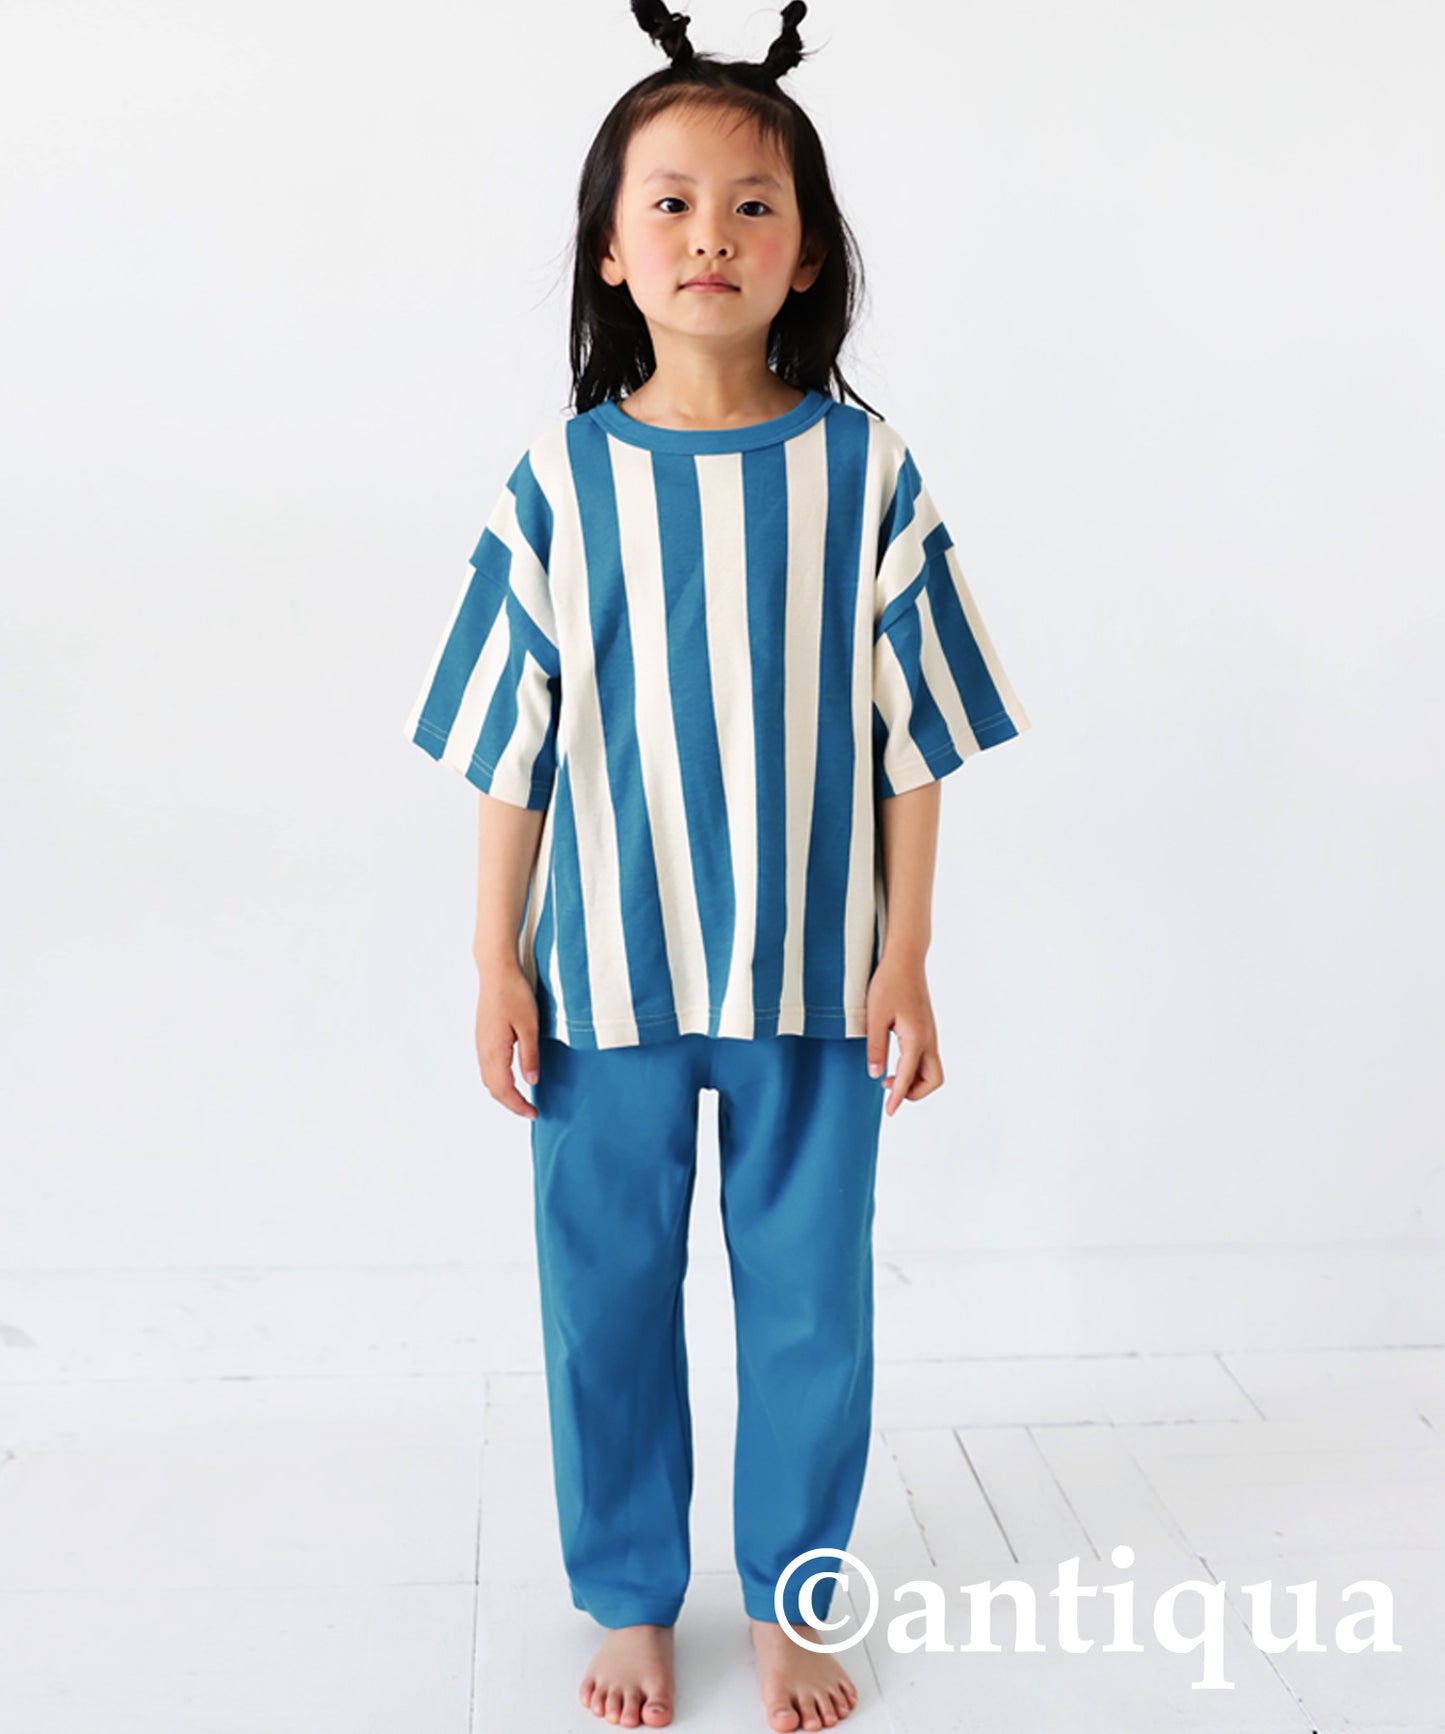 100%cotton striped pattern short sleeve room wear Kids